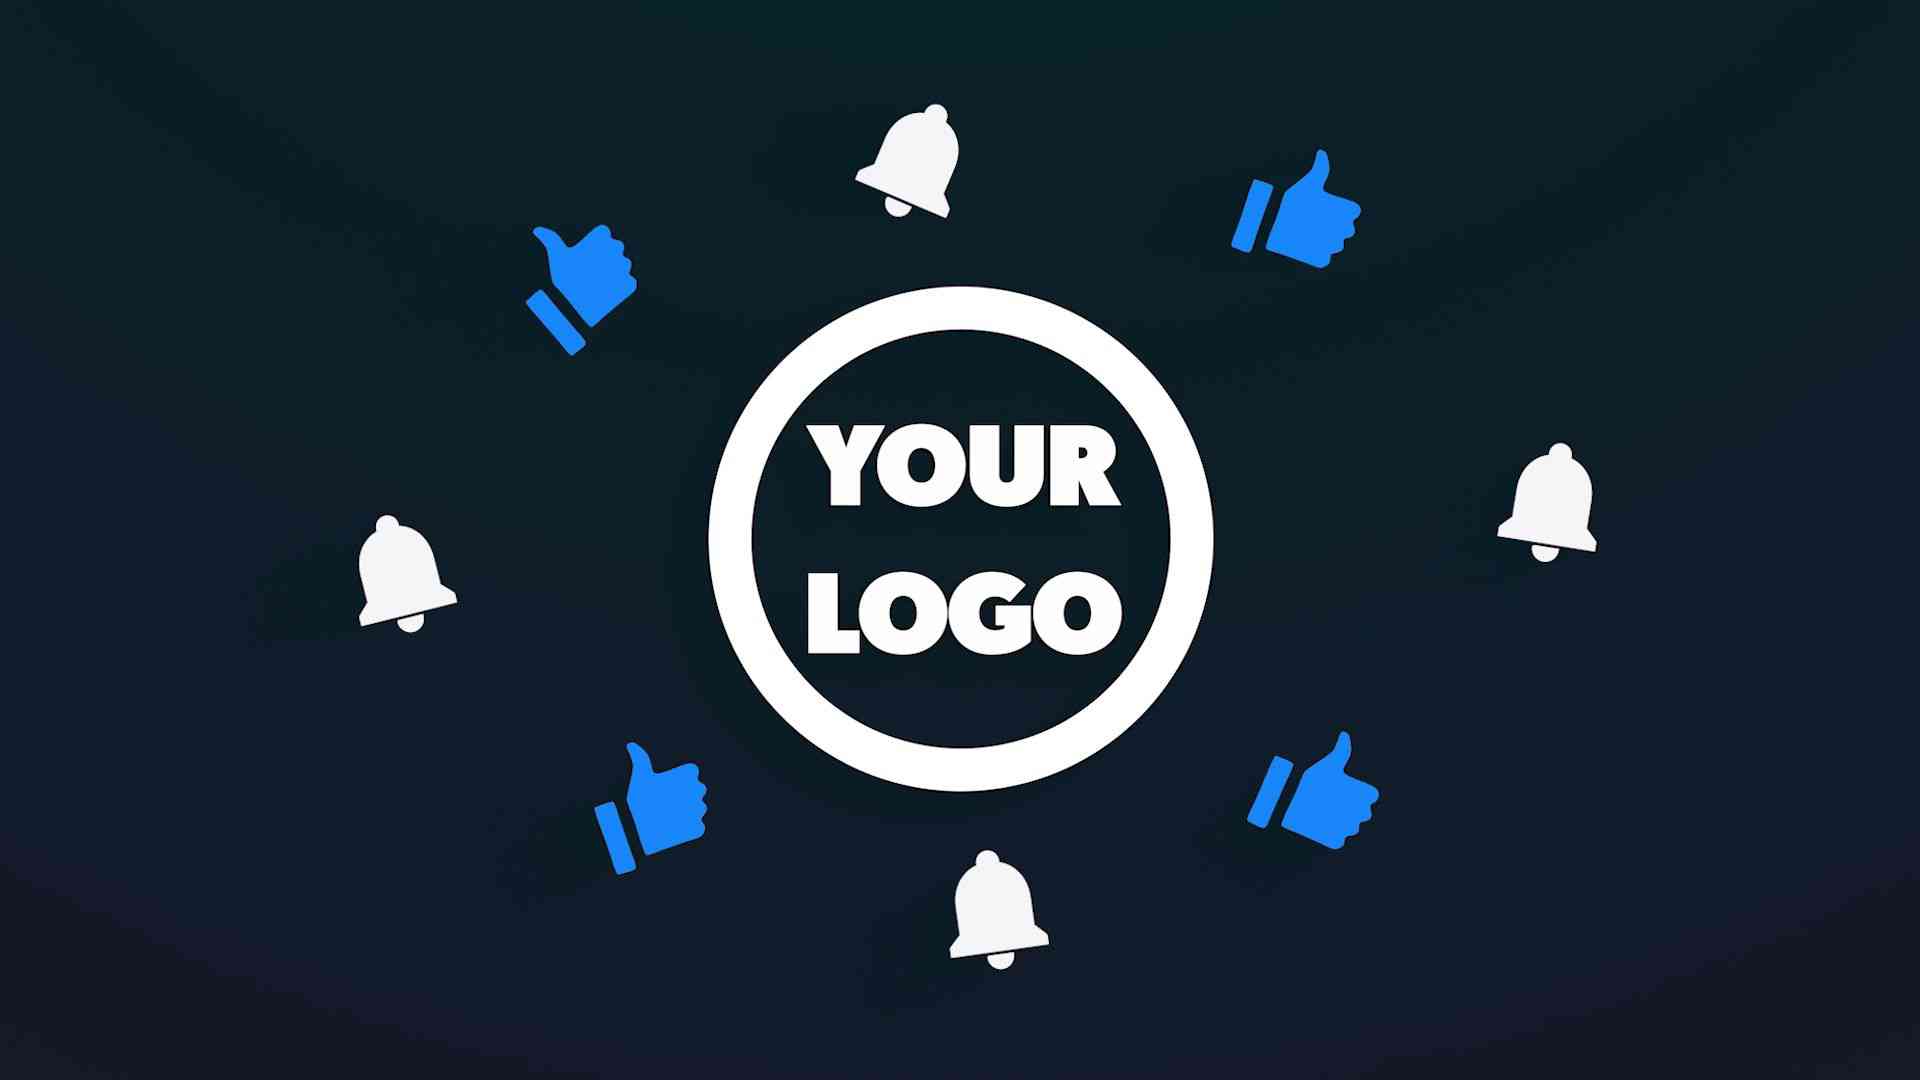 adobe premiere pro logo intro templates download